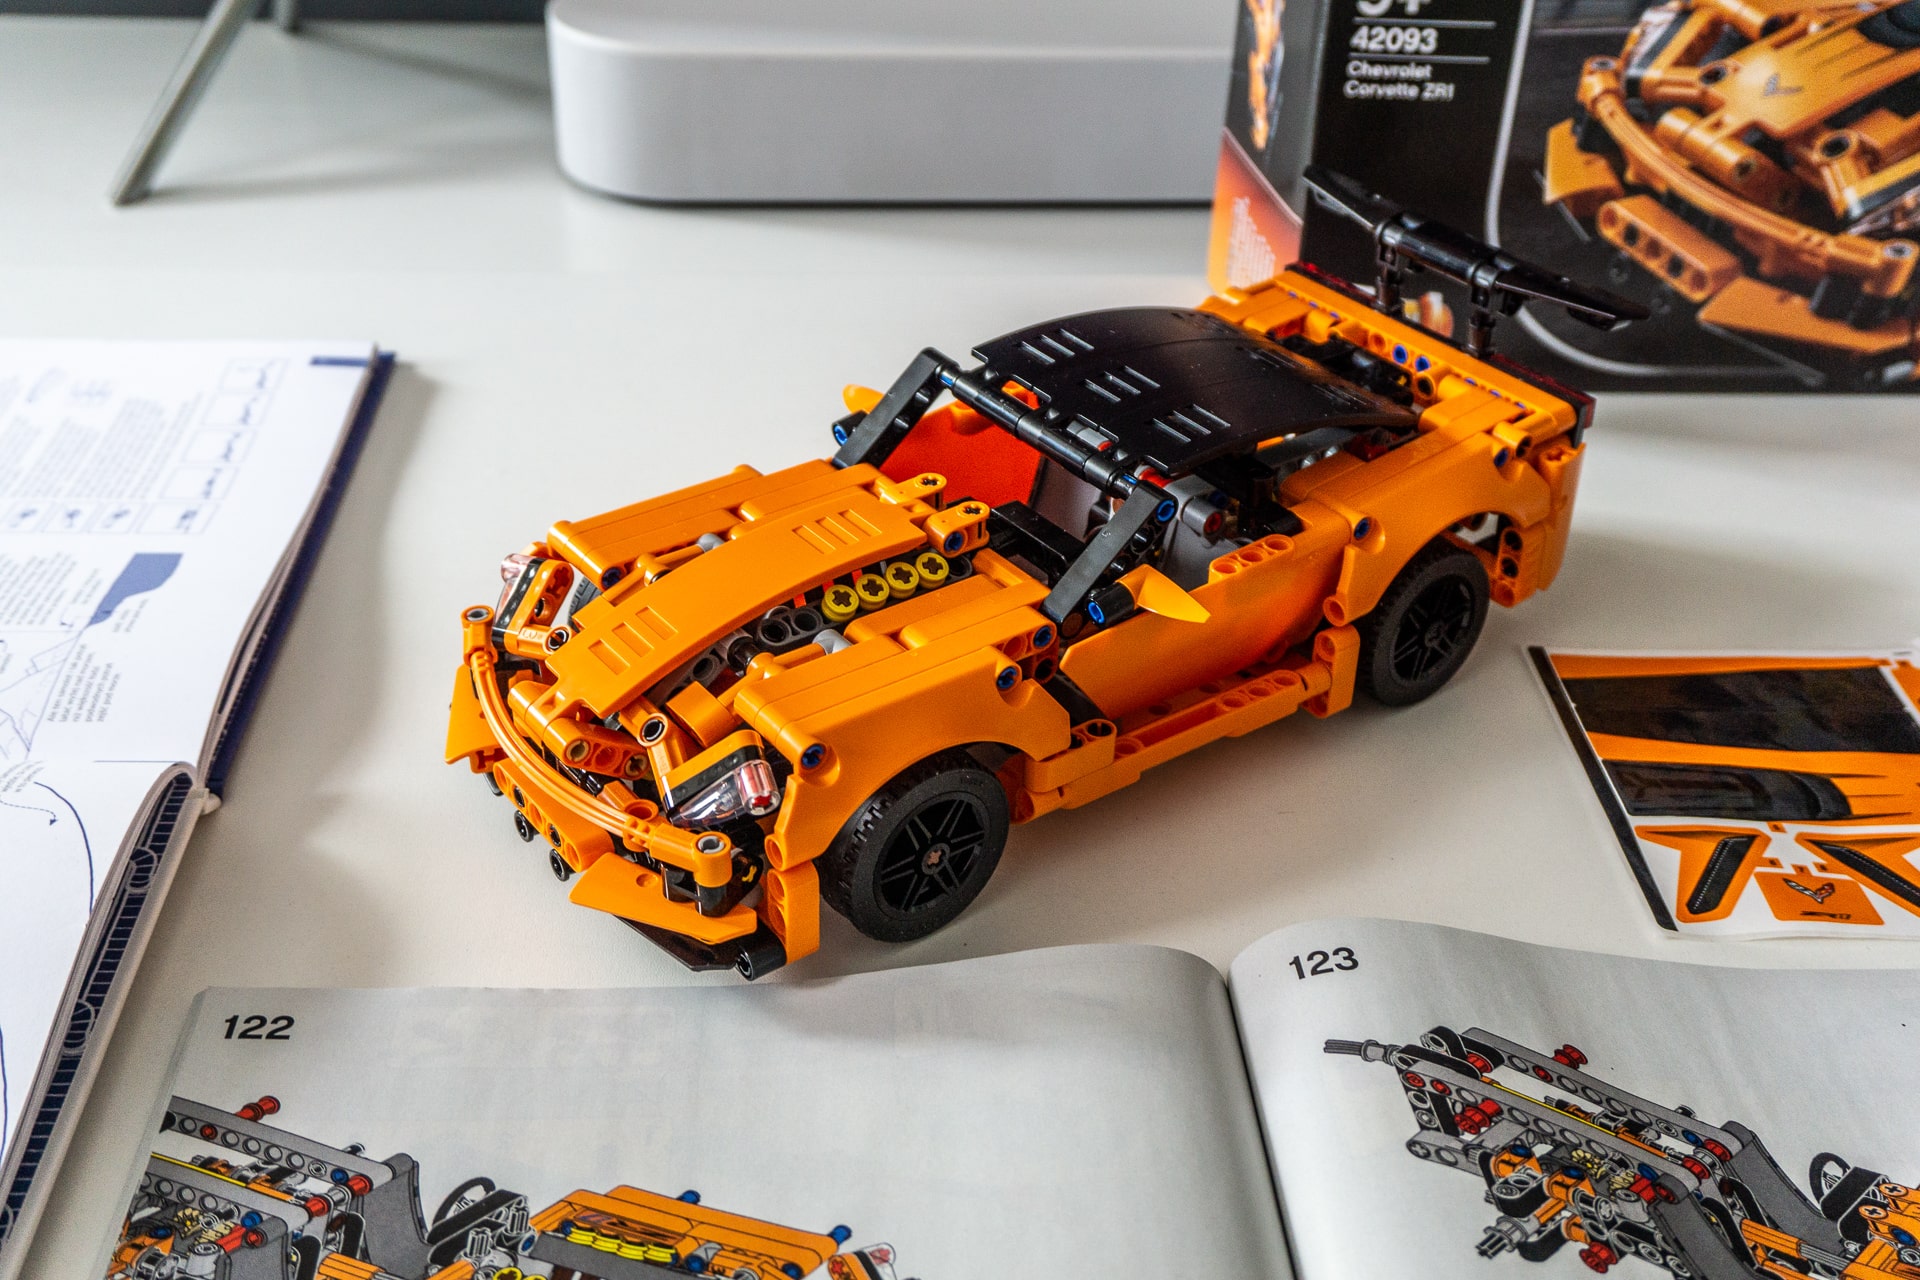 Elektrizitate gabe jolasten dugu: LEGO Chevrolet Corvette ZR1 prezio-edukien erlazio bikaina da. Sorpresa baikorra